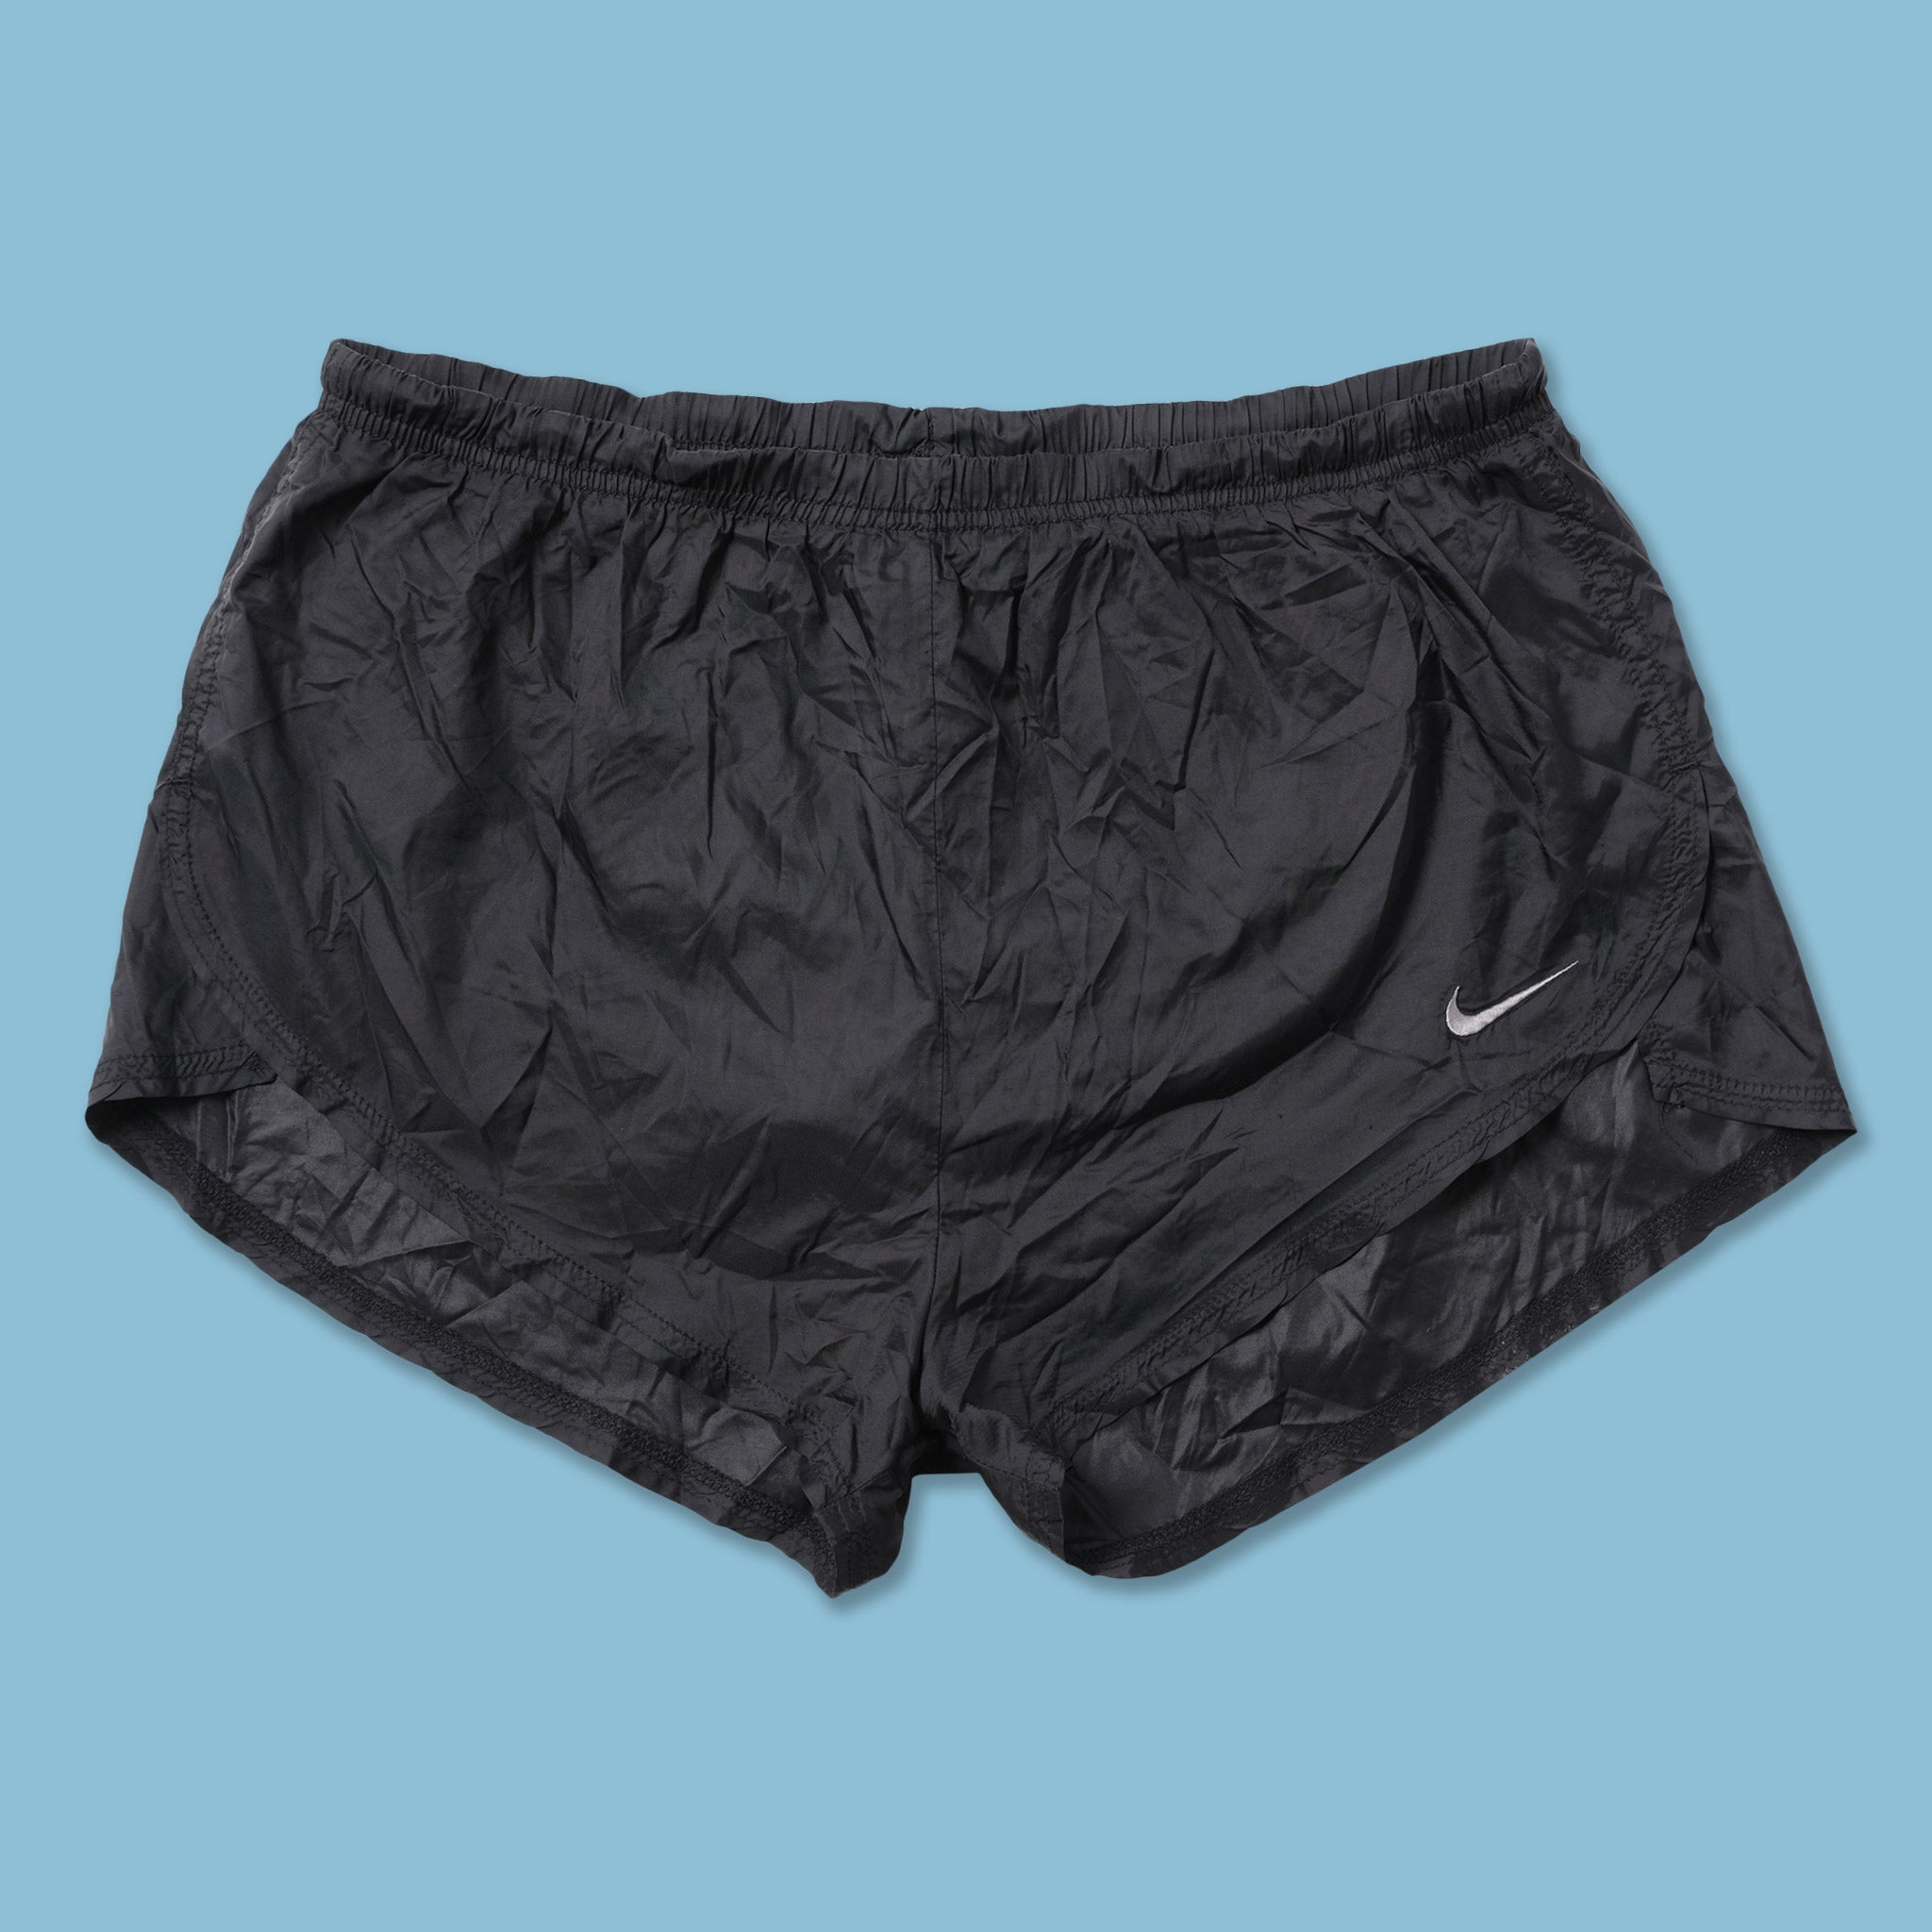 vintage nike running shorts